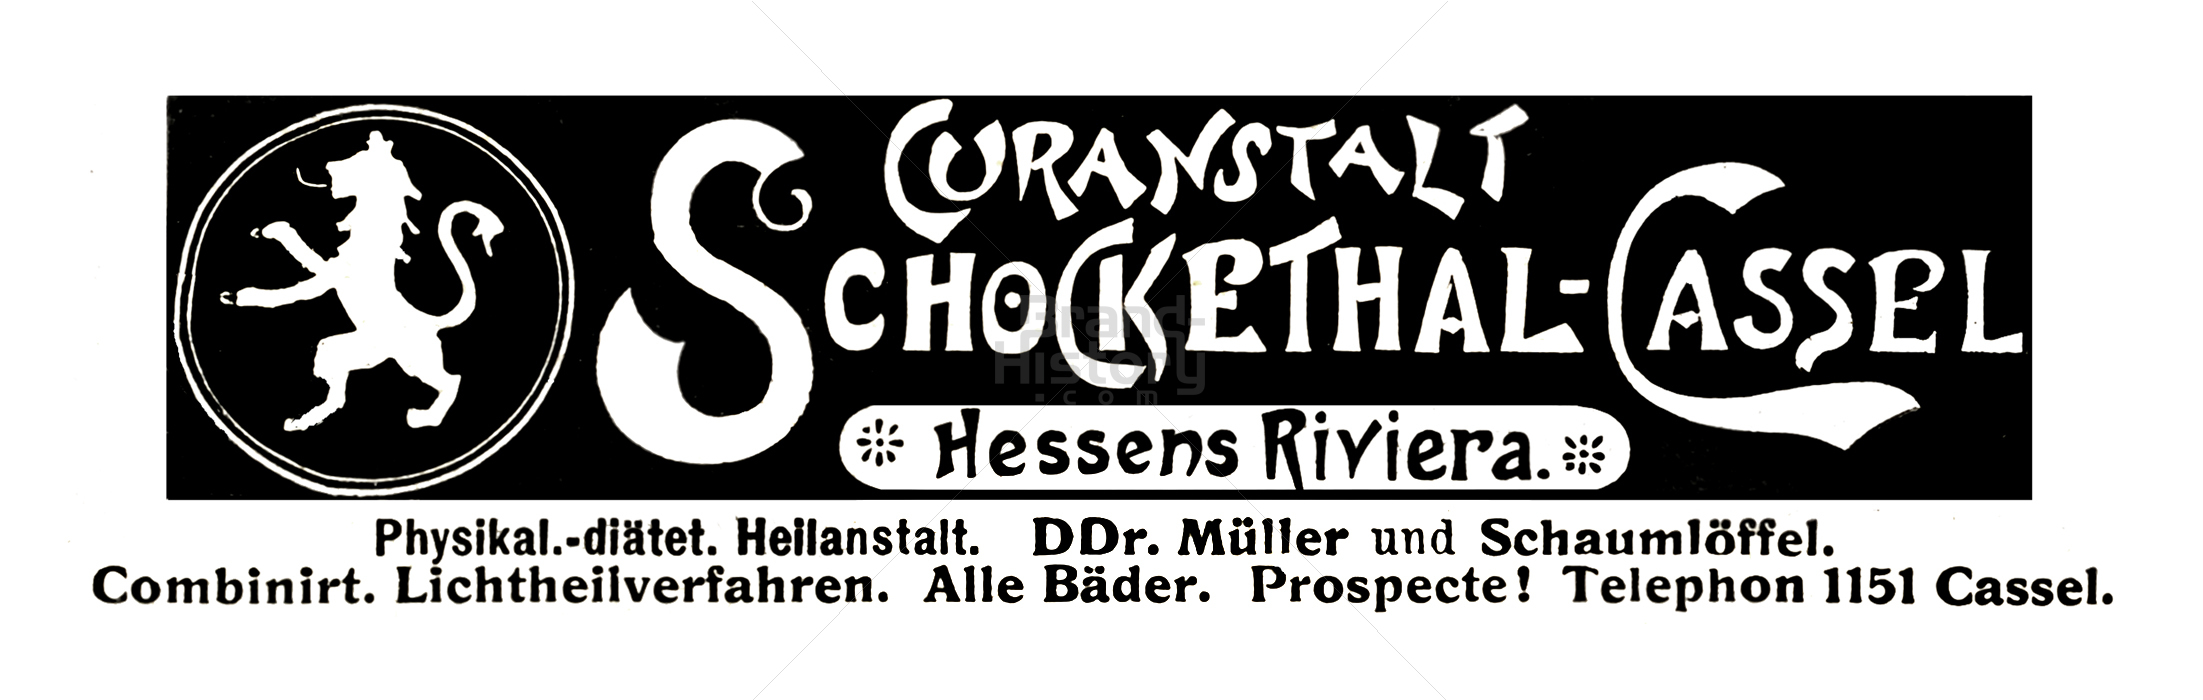 CURANSTALT SCHOCKETHAL-CASSEL